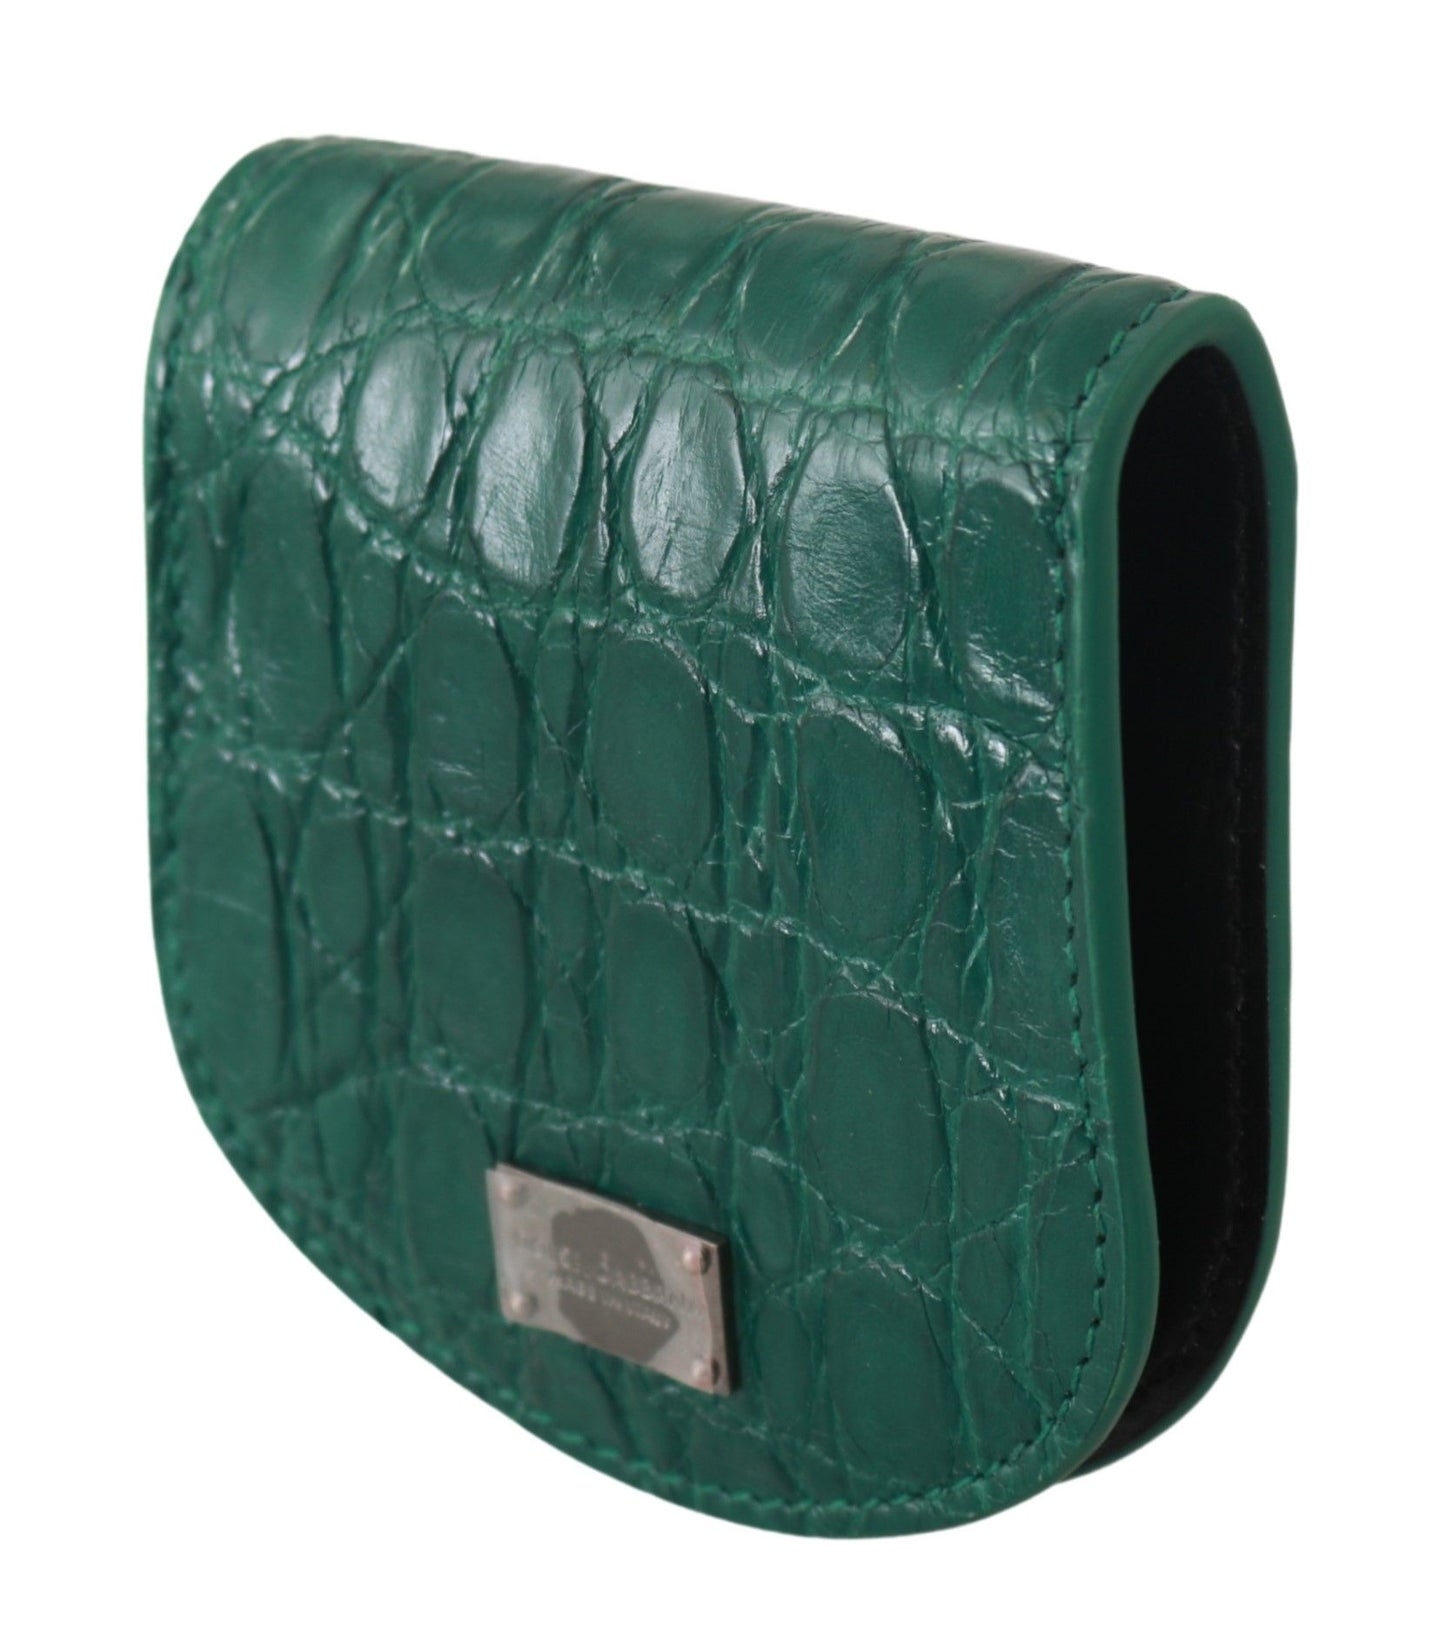 Dolce & Gabbana Green Exotic Skins Condom Case Halter Brieftasche